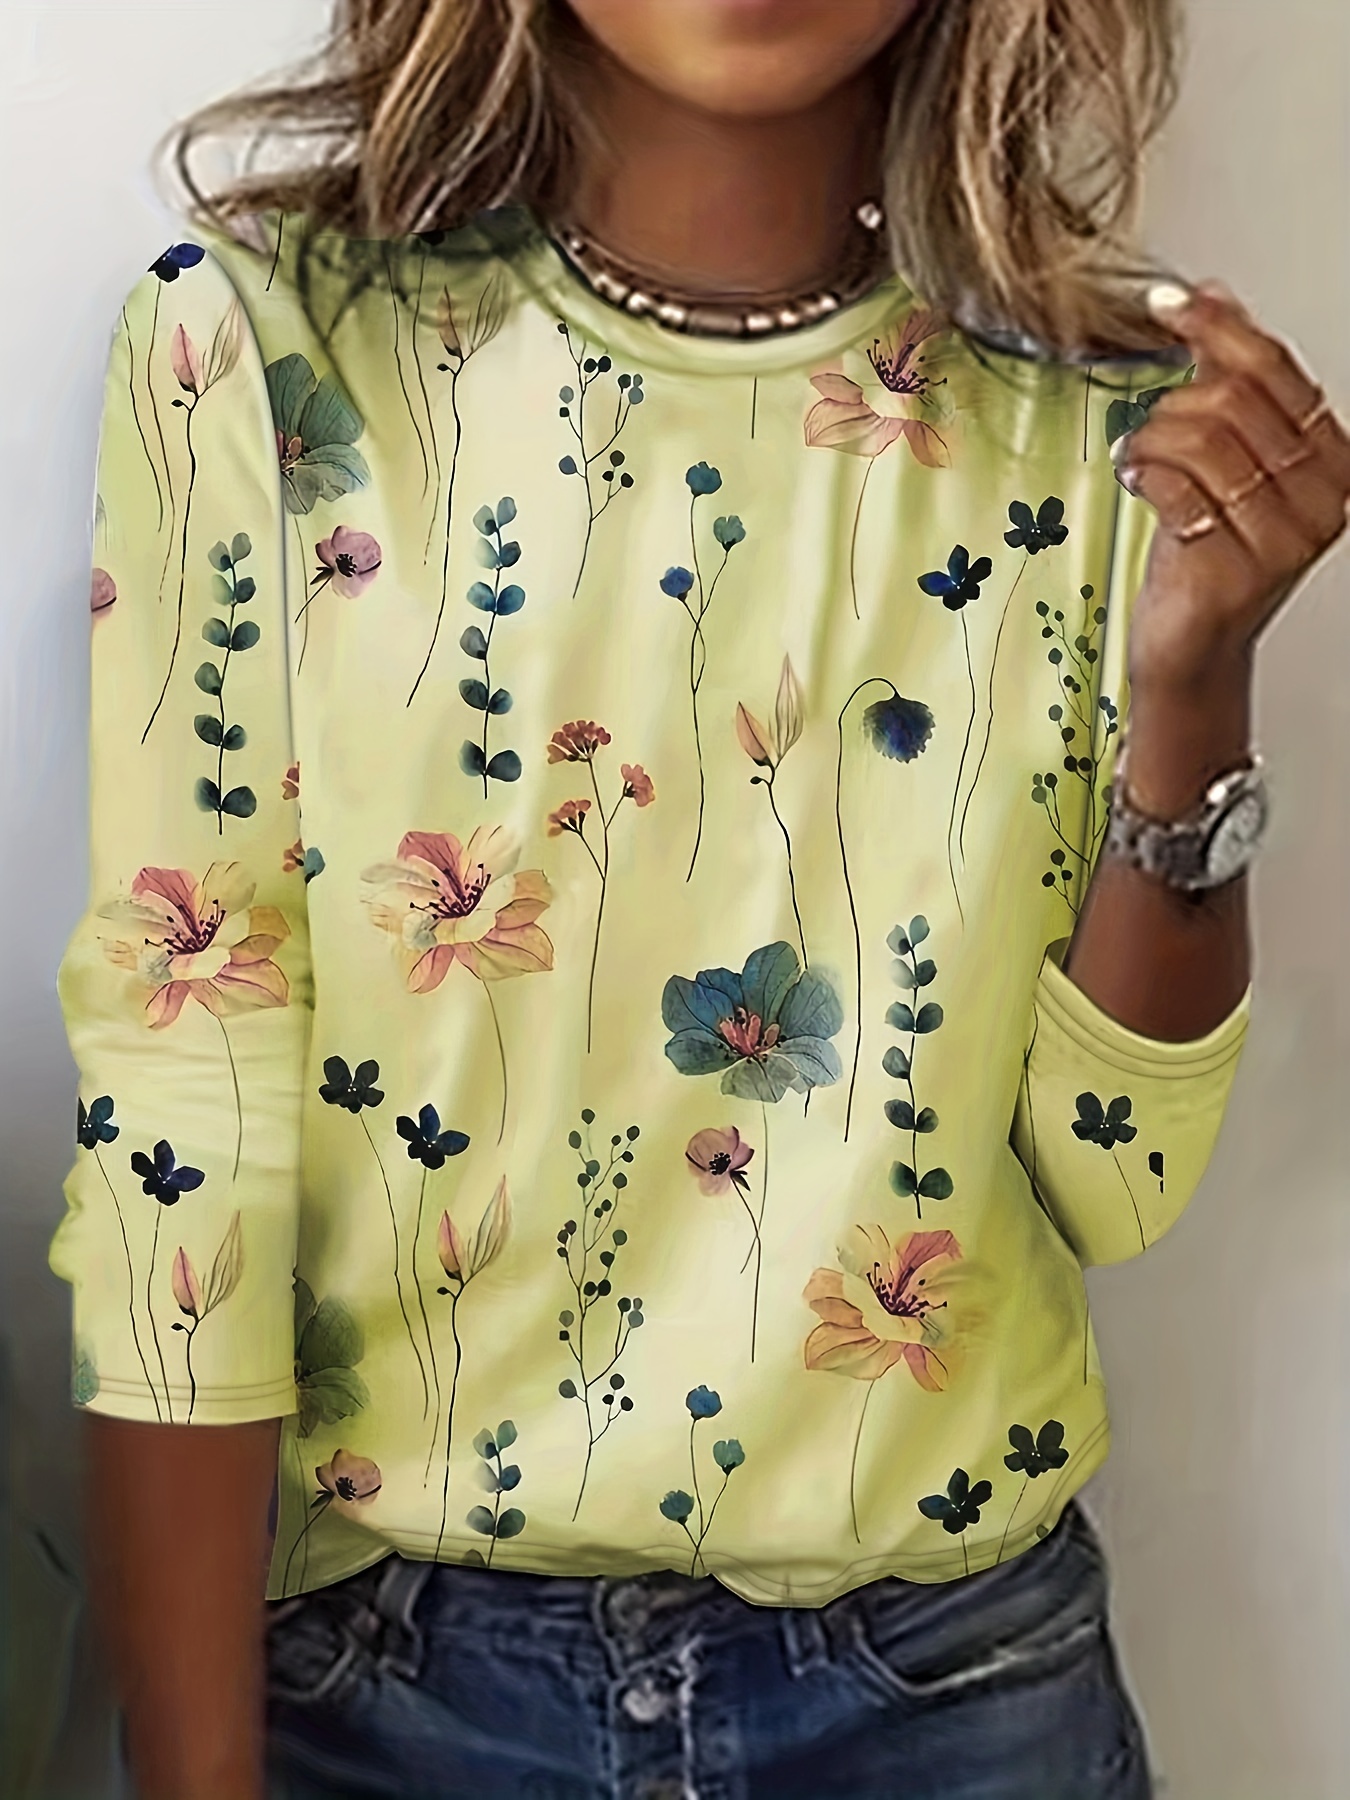 Camiseta de gola redonda com estampa floral, camiseta casual de manga comprida para primavera e outono, roupas femininas